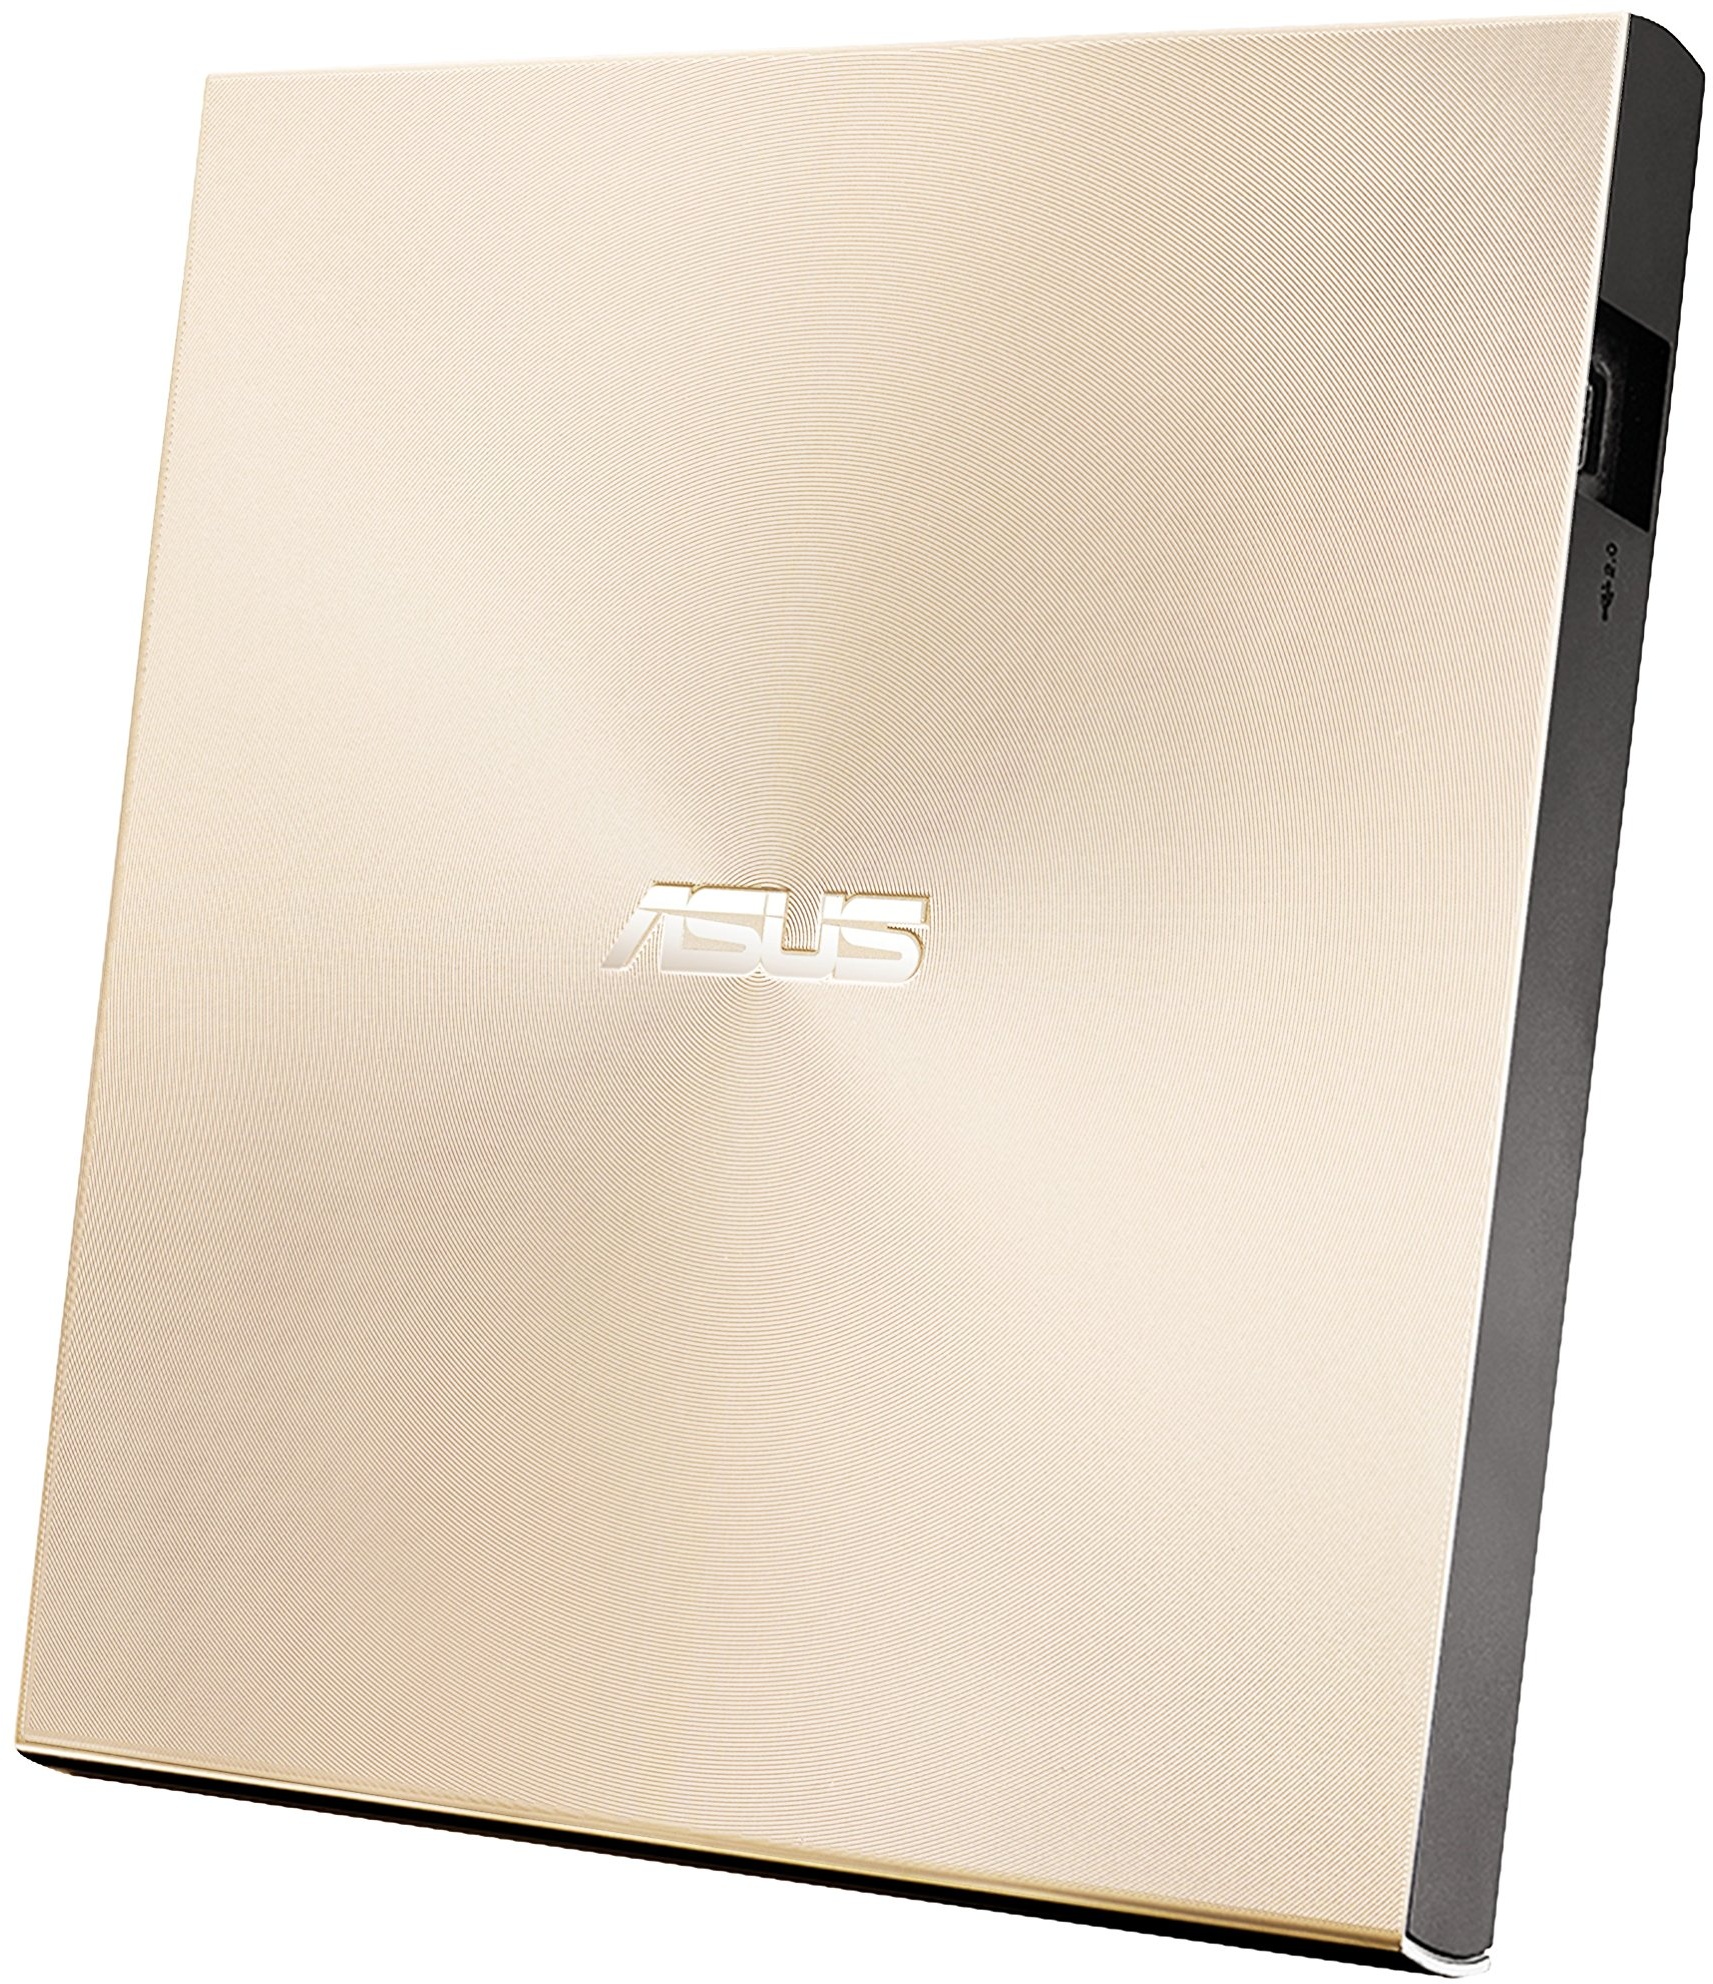 Asus ZenDrive U9M externer DVD-Brenner (für Apple MacBook & Windows PCs/Notebooks, inkl. USB-C Kabel, Brennsoftware & Nero Backup App, M-Disc Support, USB 2.0) gold